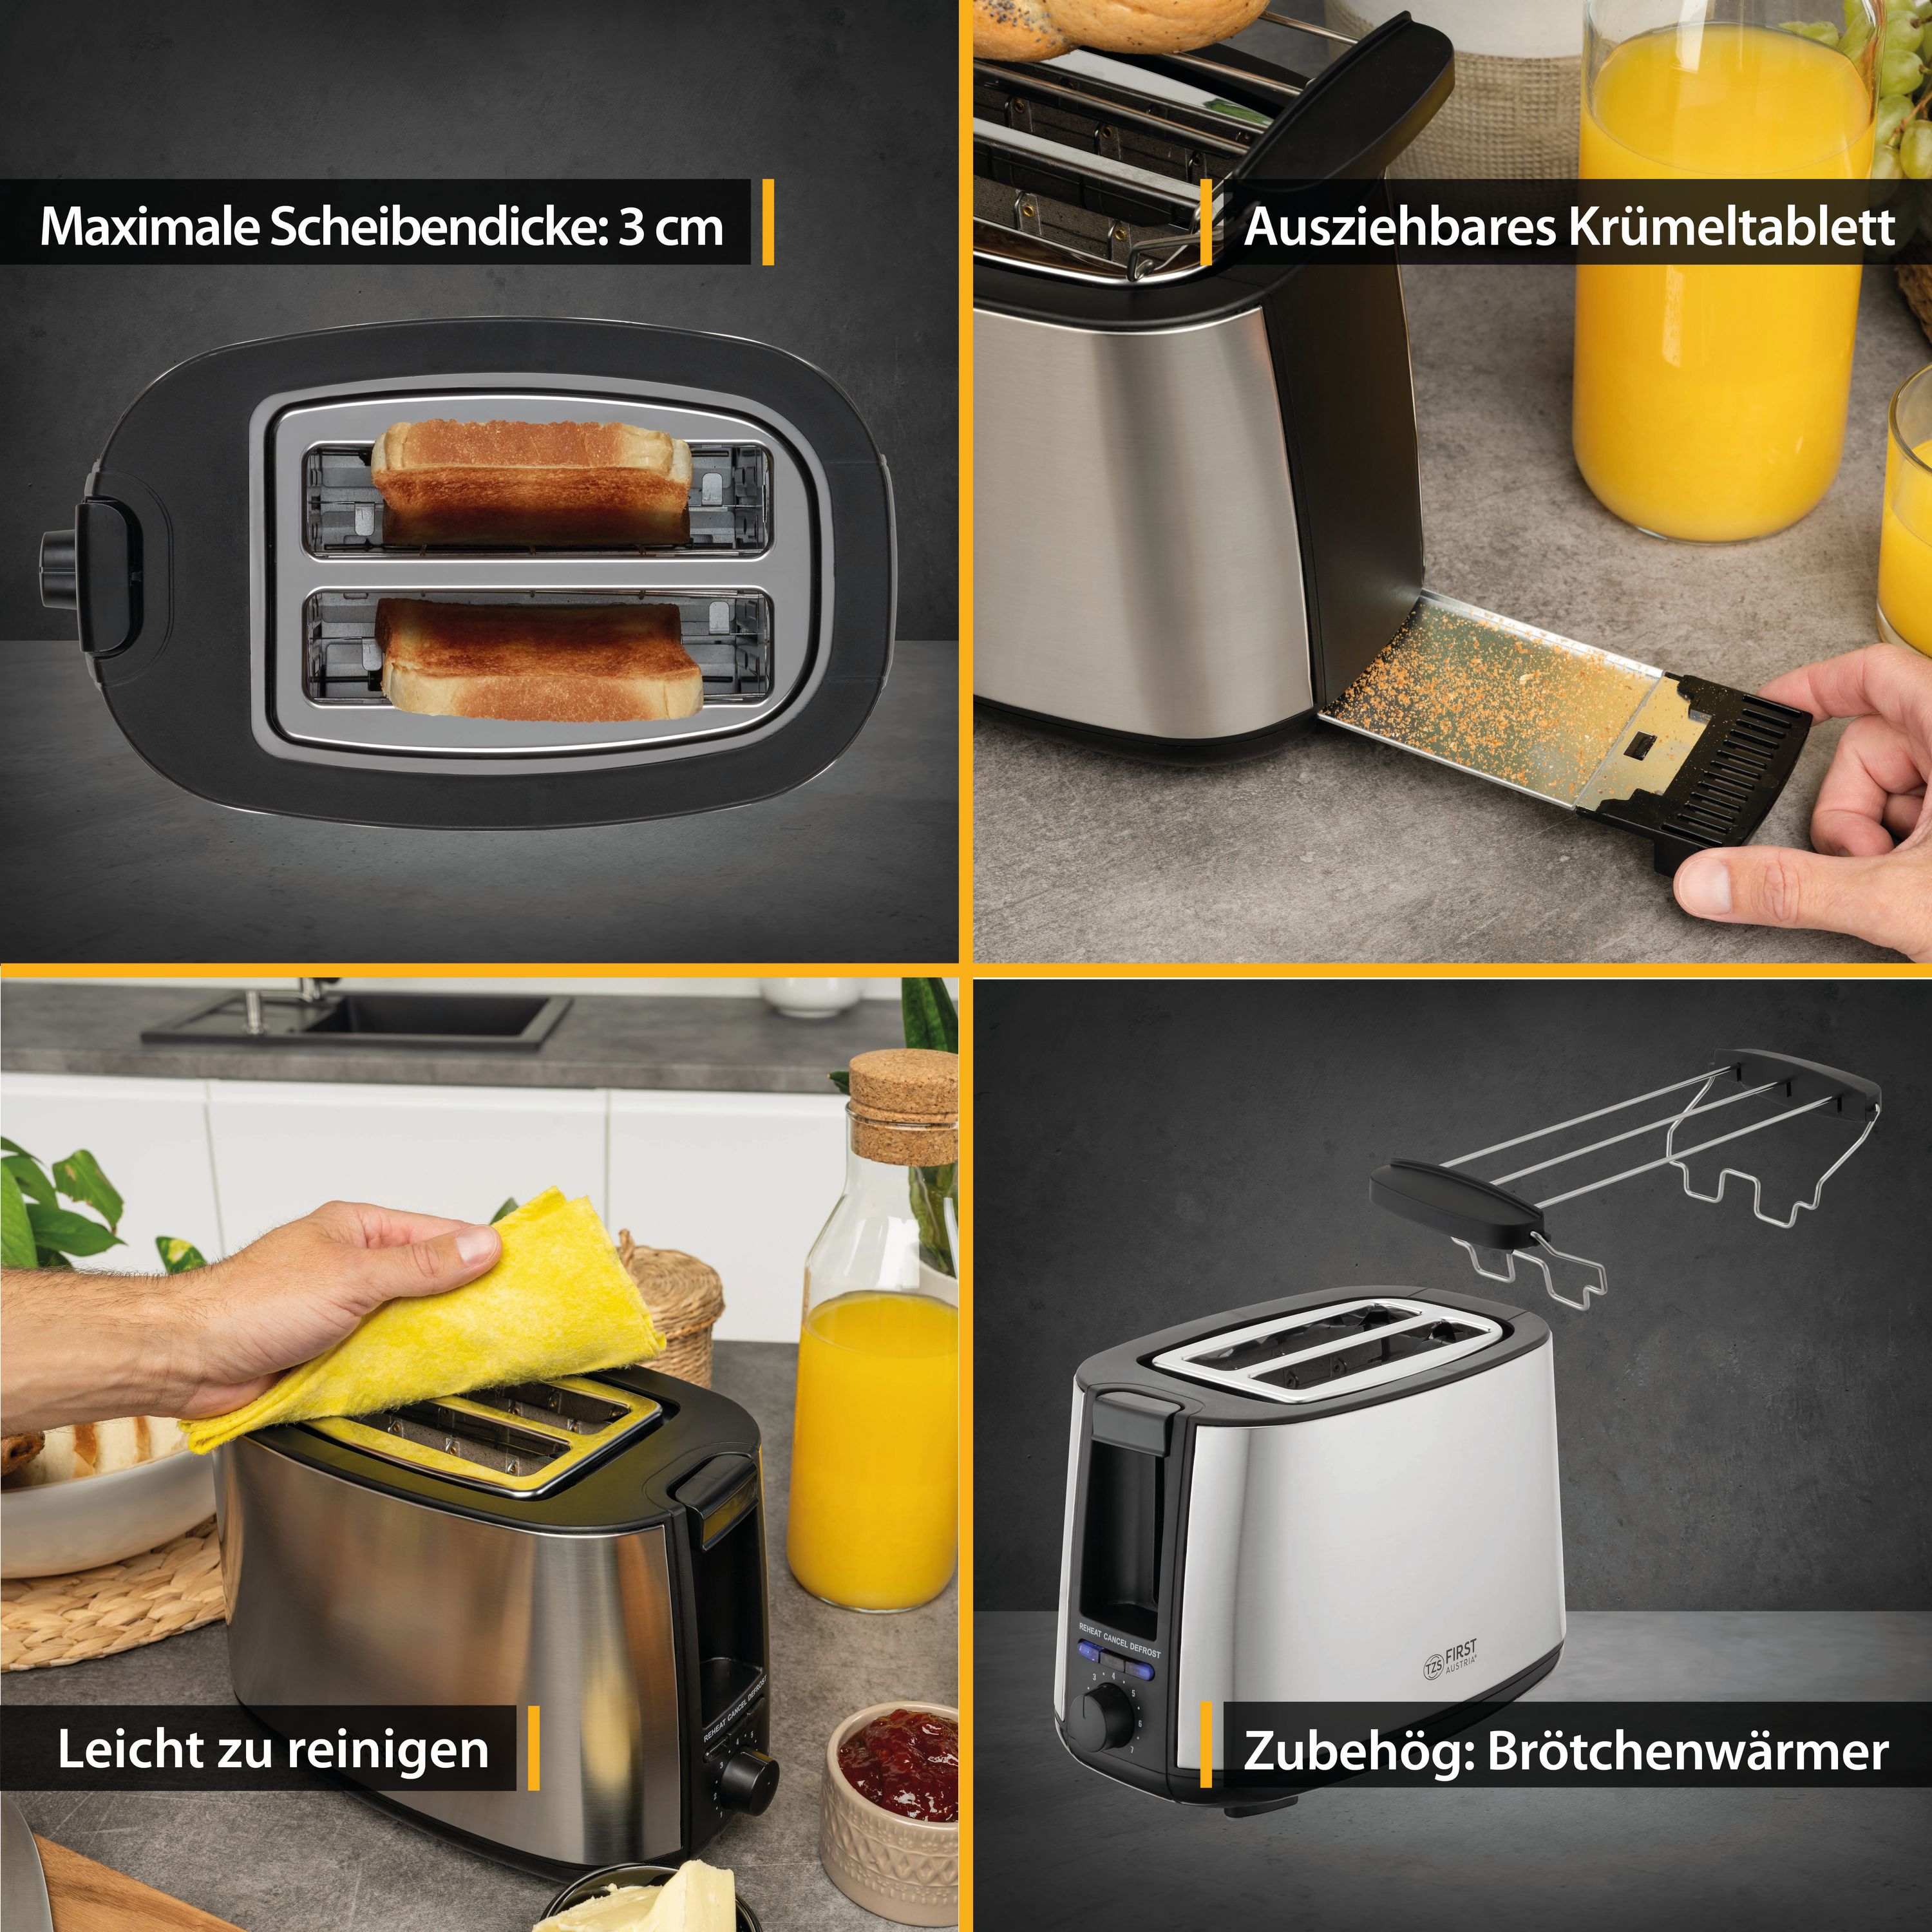 Toaster | 2 Scheiben | 750W | Edelstahl/Schwarz